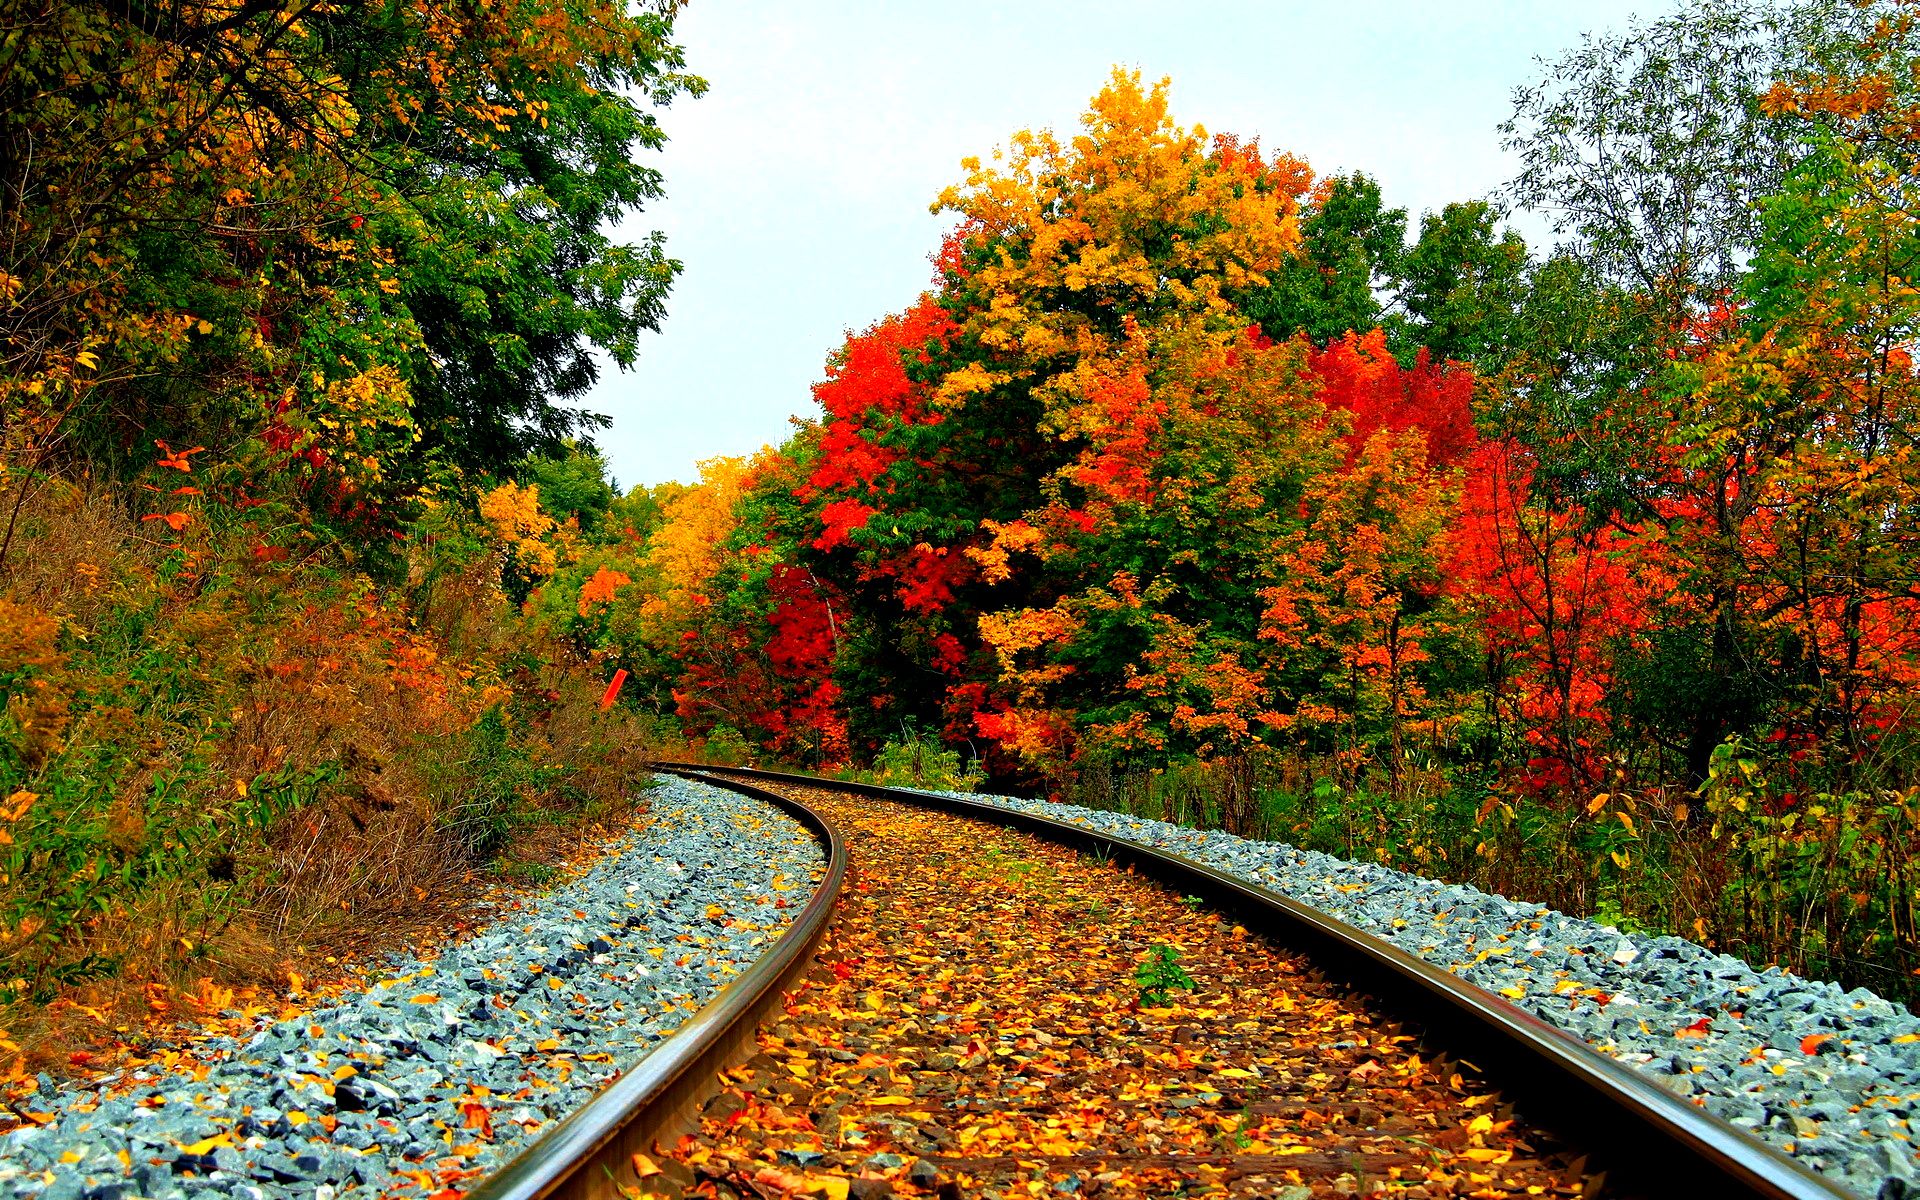 Fall Train Wallpaper